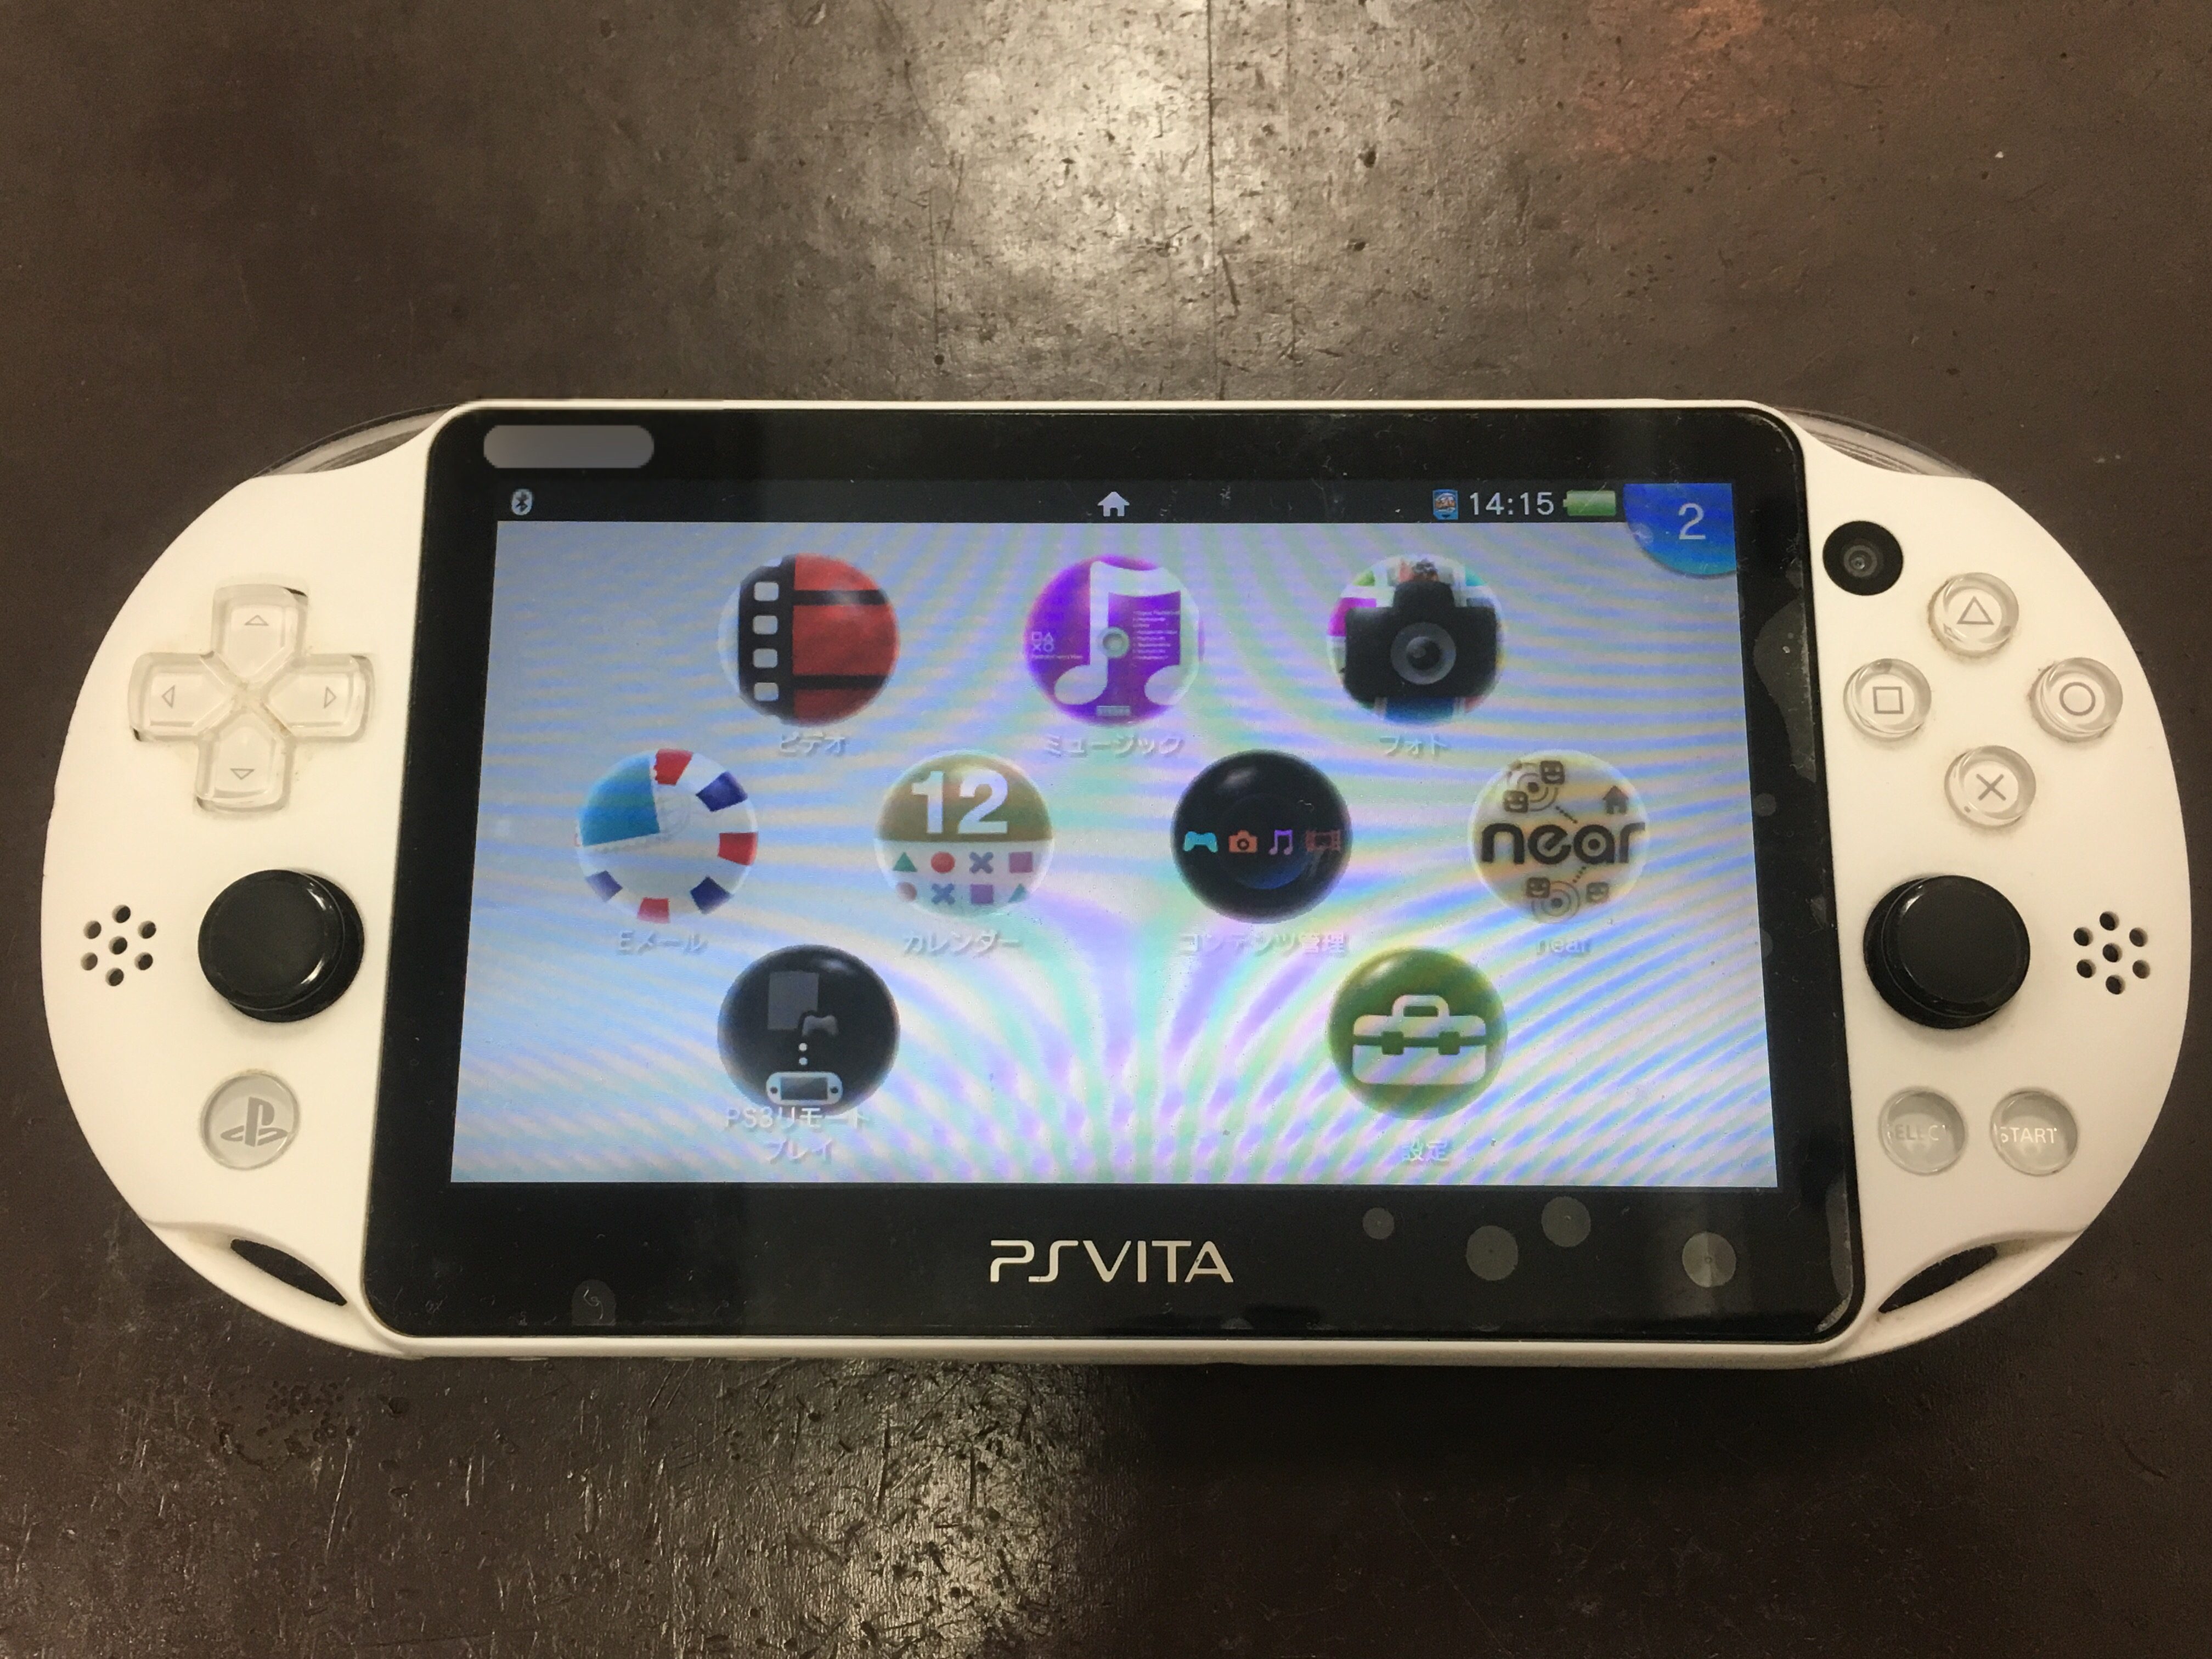 Ps Vita 00のアナログスティックが勝手に動くようになった 部品交換で即日解決しました Nintendo3ds Switch Psp 修理のゲームホスピタル Nintendo3ds ニンテンドーds Psp Switch 修理